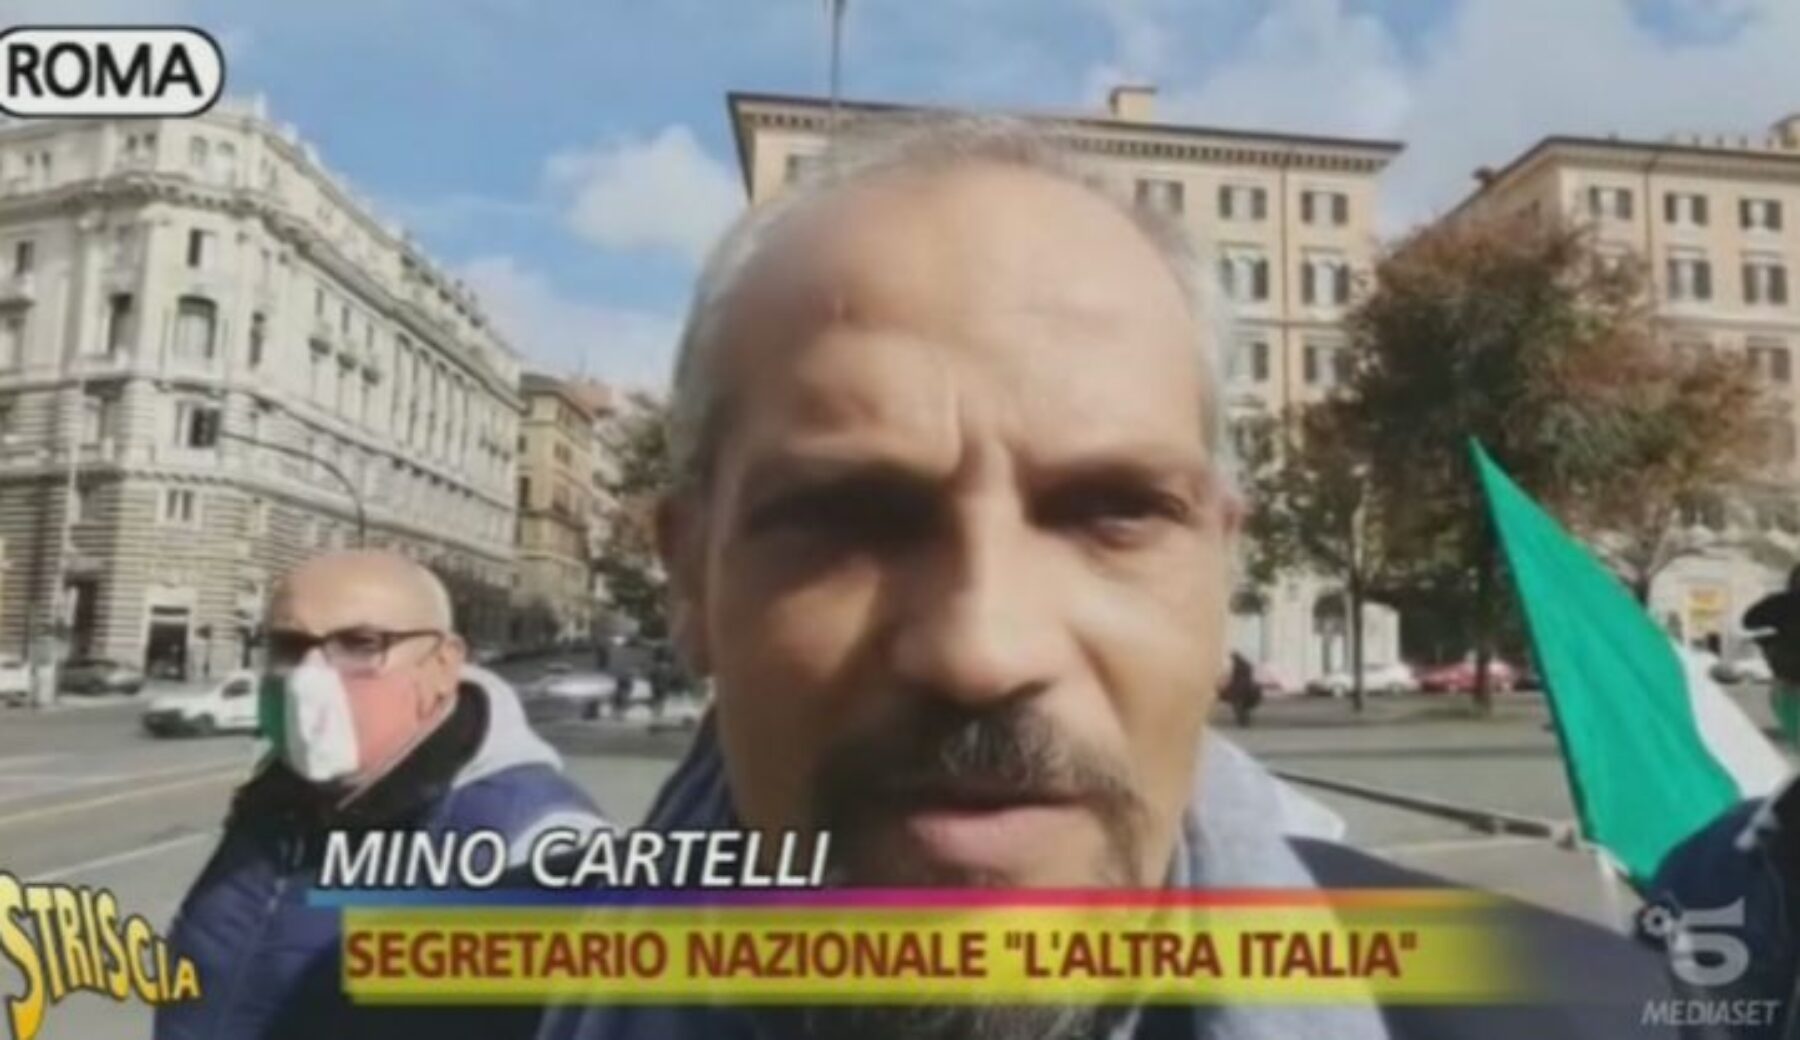 Candidopoli, rivelazioni shock su “L’Altra Italia” e sul segretario generale del partito Mino Cartelli